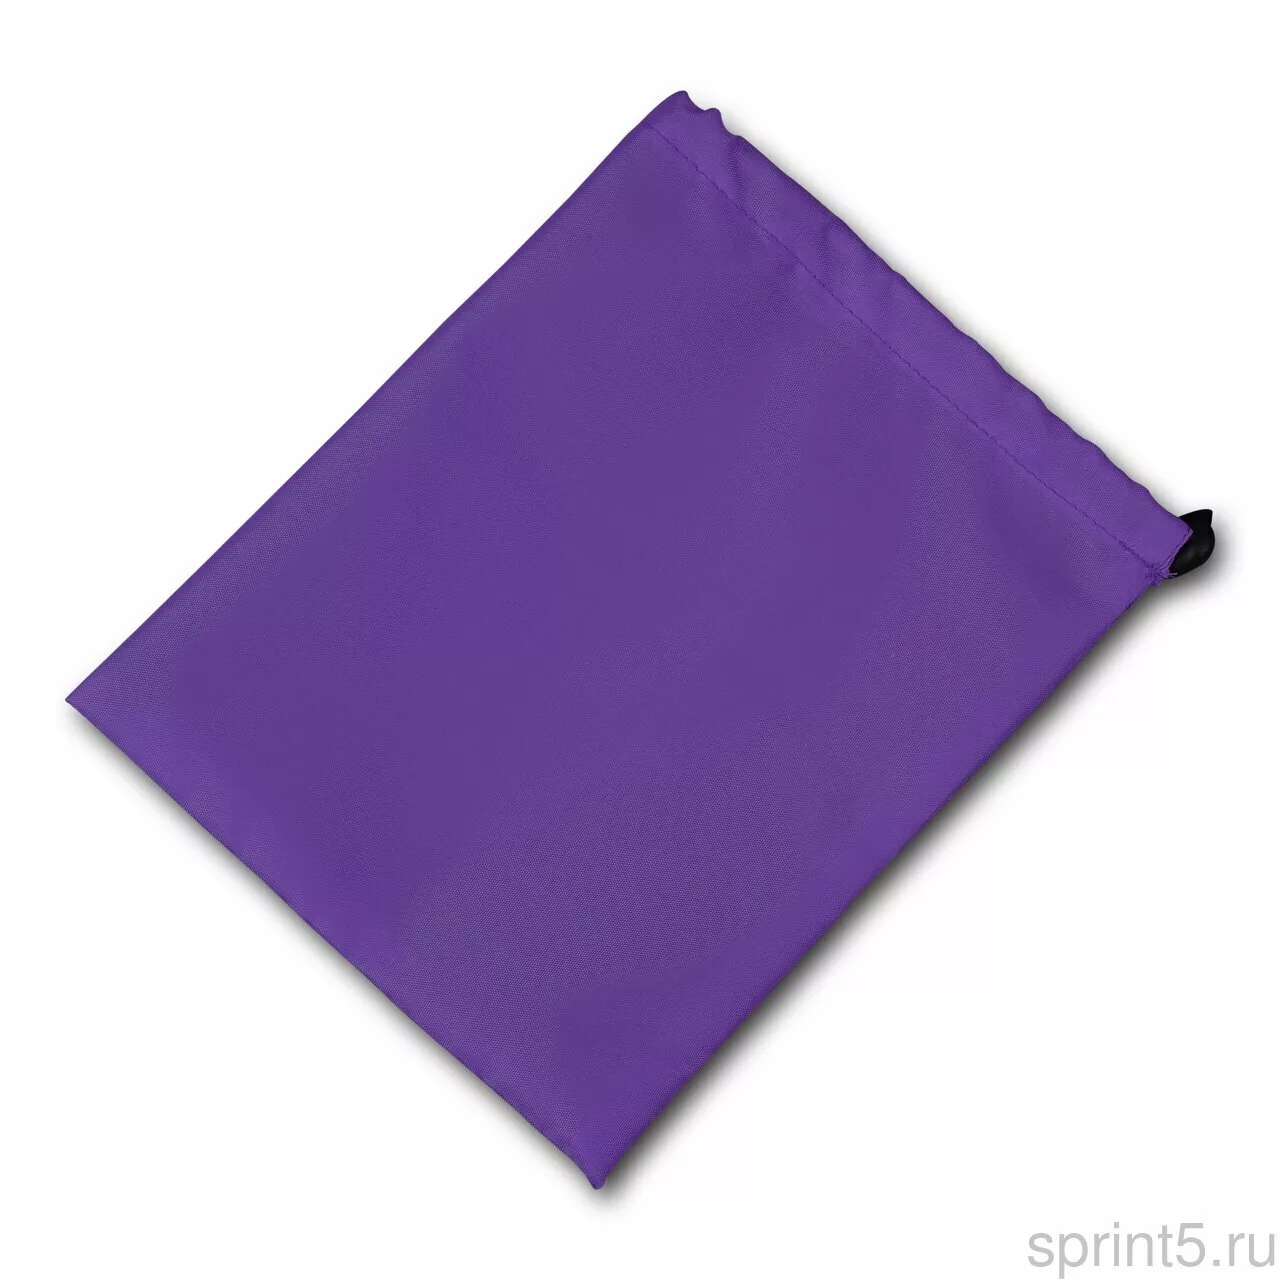 Фото Чехол для скакалки Indigo 22*18 см фиолетовый SM-338 со склада магазина СпортСЕ